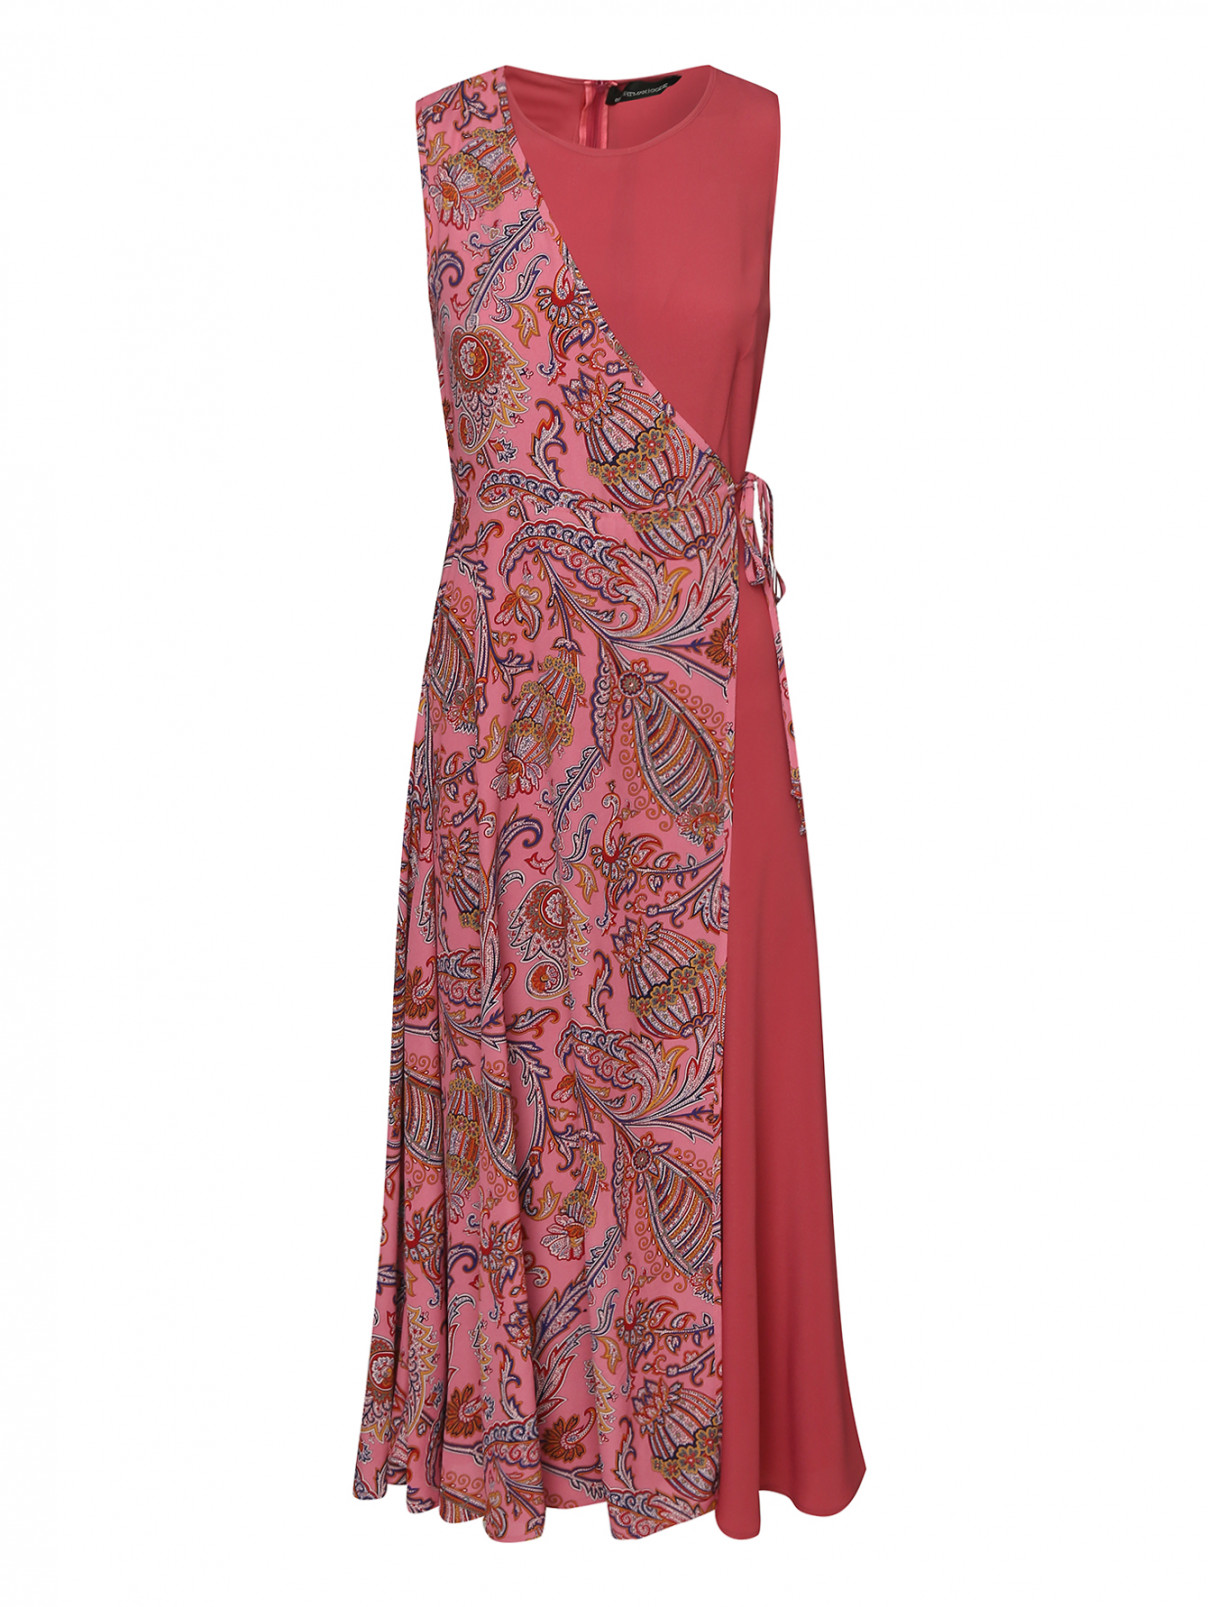 Платье с принтом на запах Sportmax  –  Общий вид  – Цвет:  Розовый